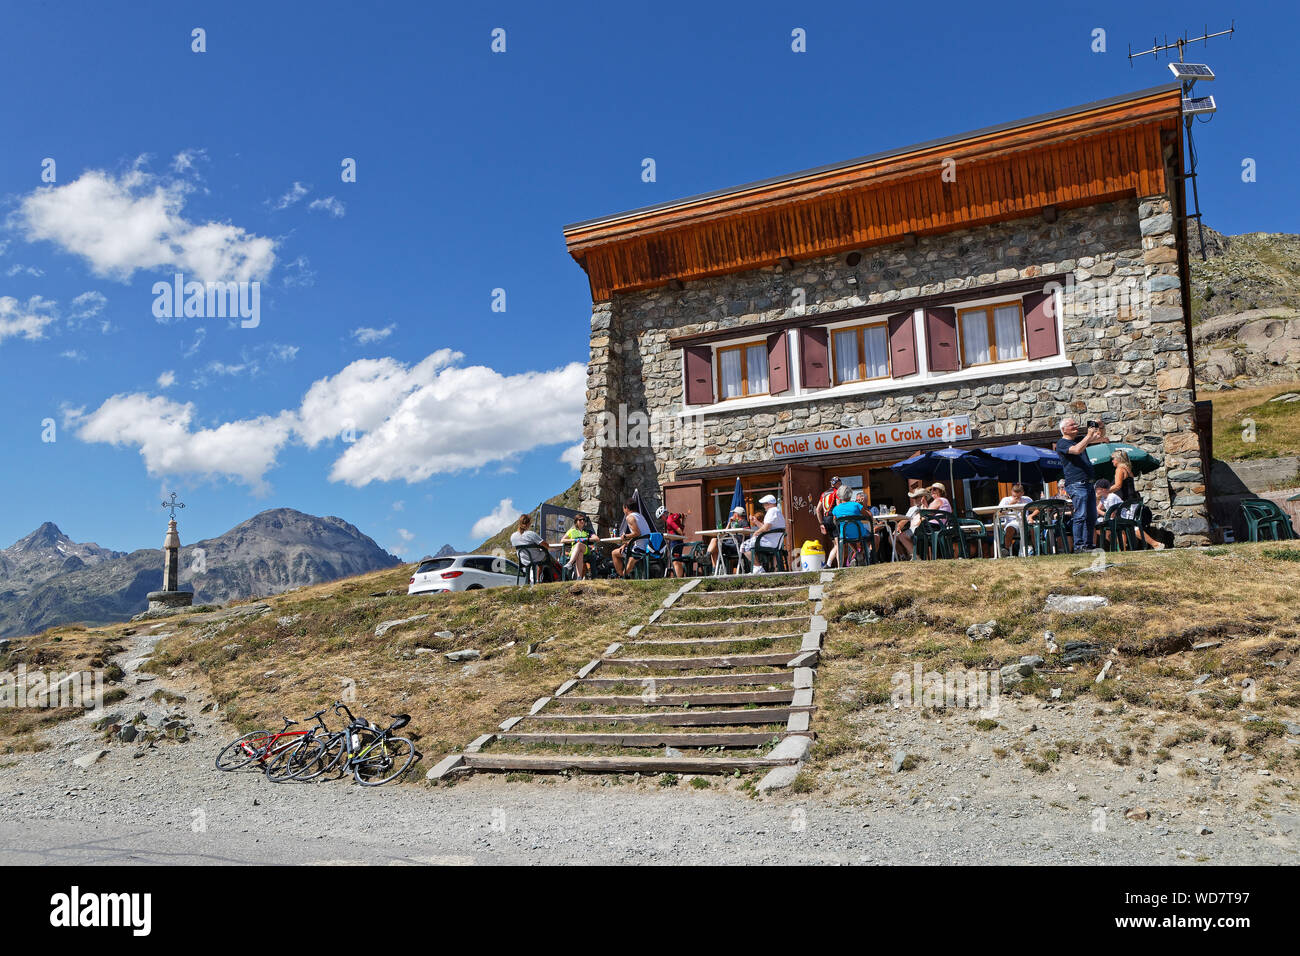 - SAINT SORLIN, Frankreich, 9. August 2019: Das Chalet von Croix de Fer, in der berühmten Mountain Pass der Französischen Alpen. Stockfoto